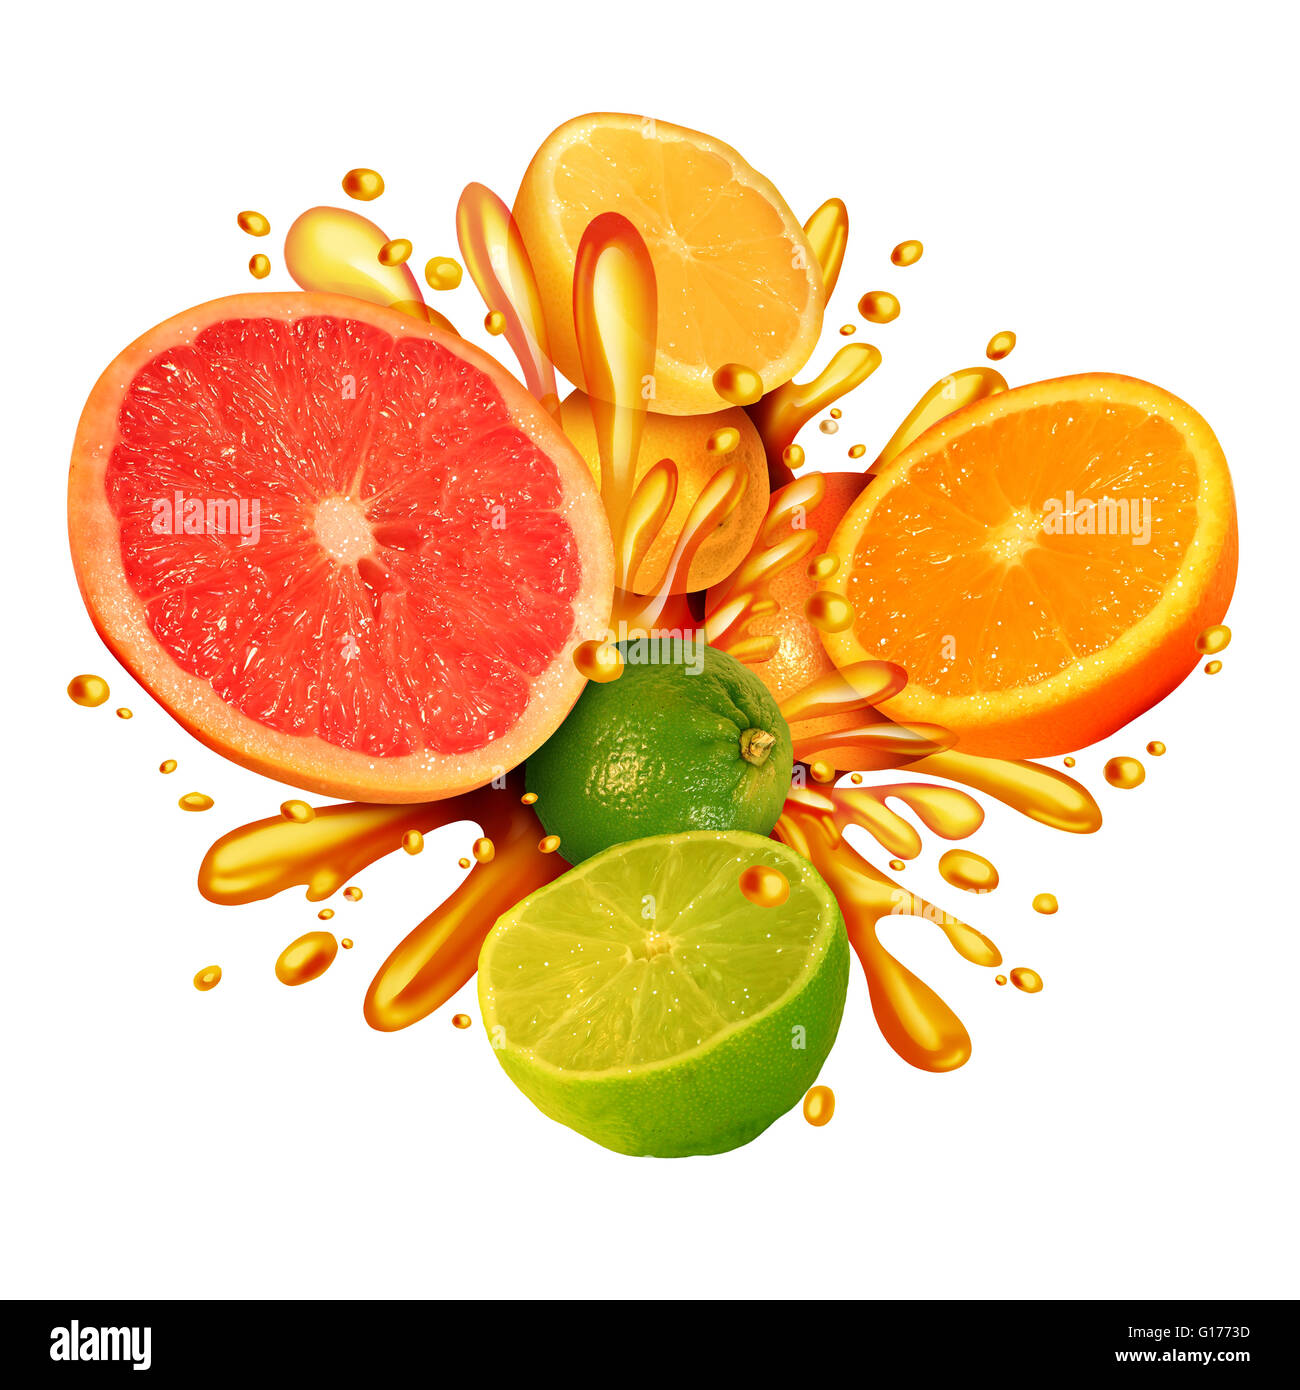 Zitrusfrüchte splash Symbol mit einer Gruppe von frischen Orangen, Zitronen, Mandarinen und Grapefruit planschen im Saft für ein gesundes Leben essen Bio saftige gesunde Ernährung reich an natürlichen Vitaminen in einer 3D Darstellung Stil Kalk. Stockfoto